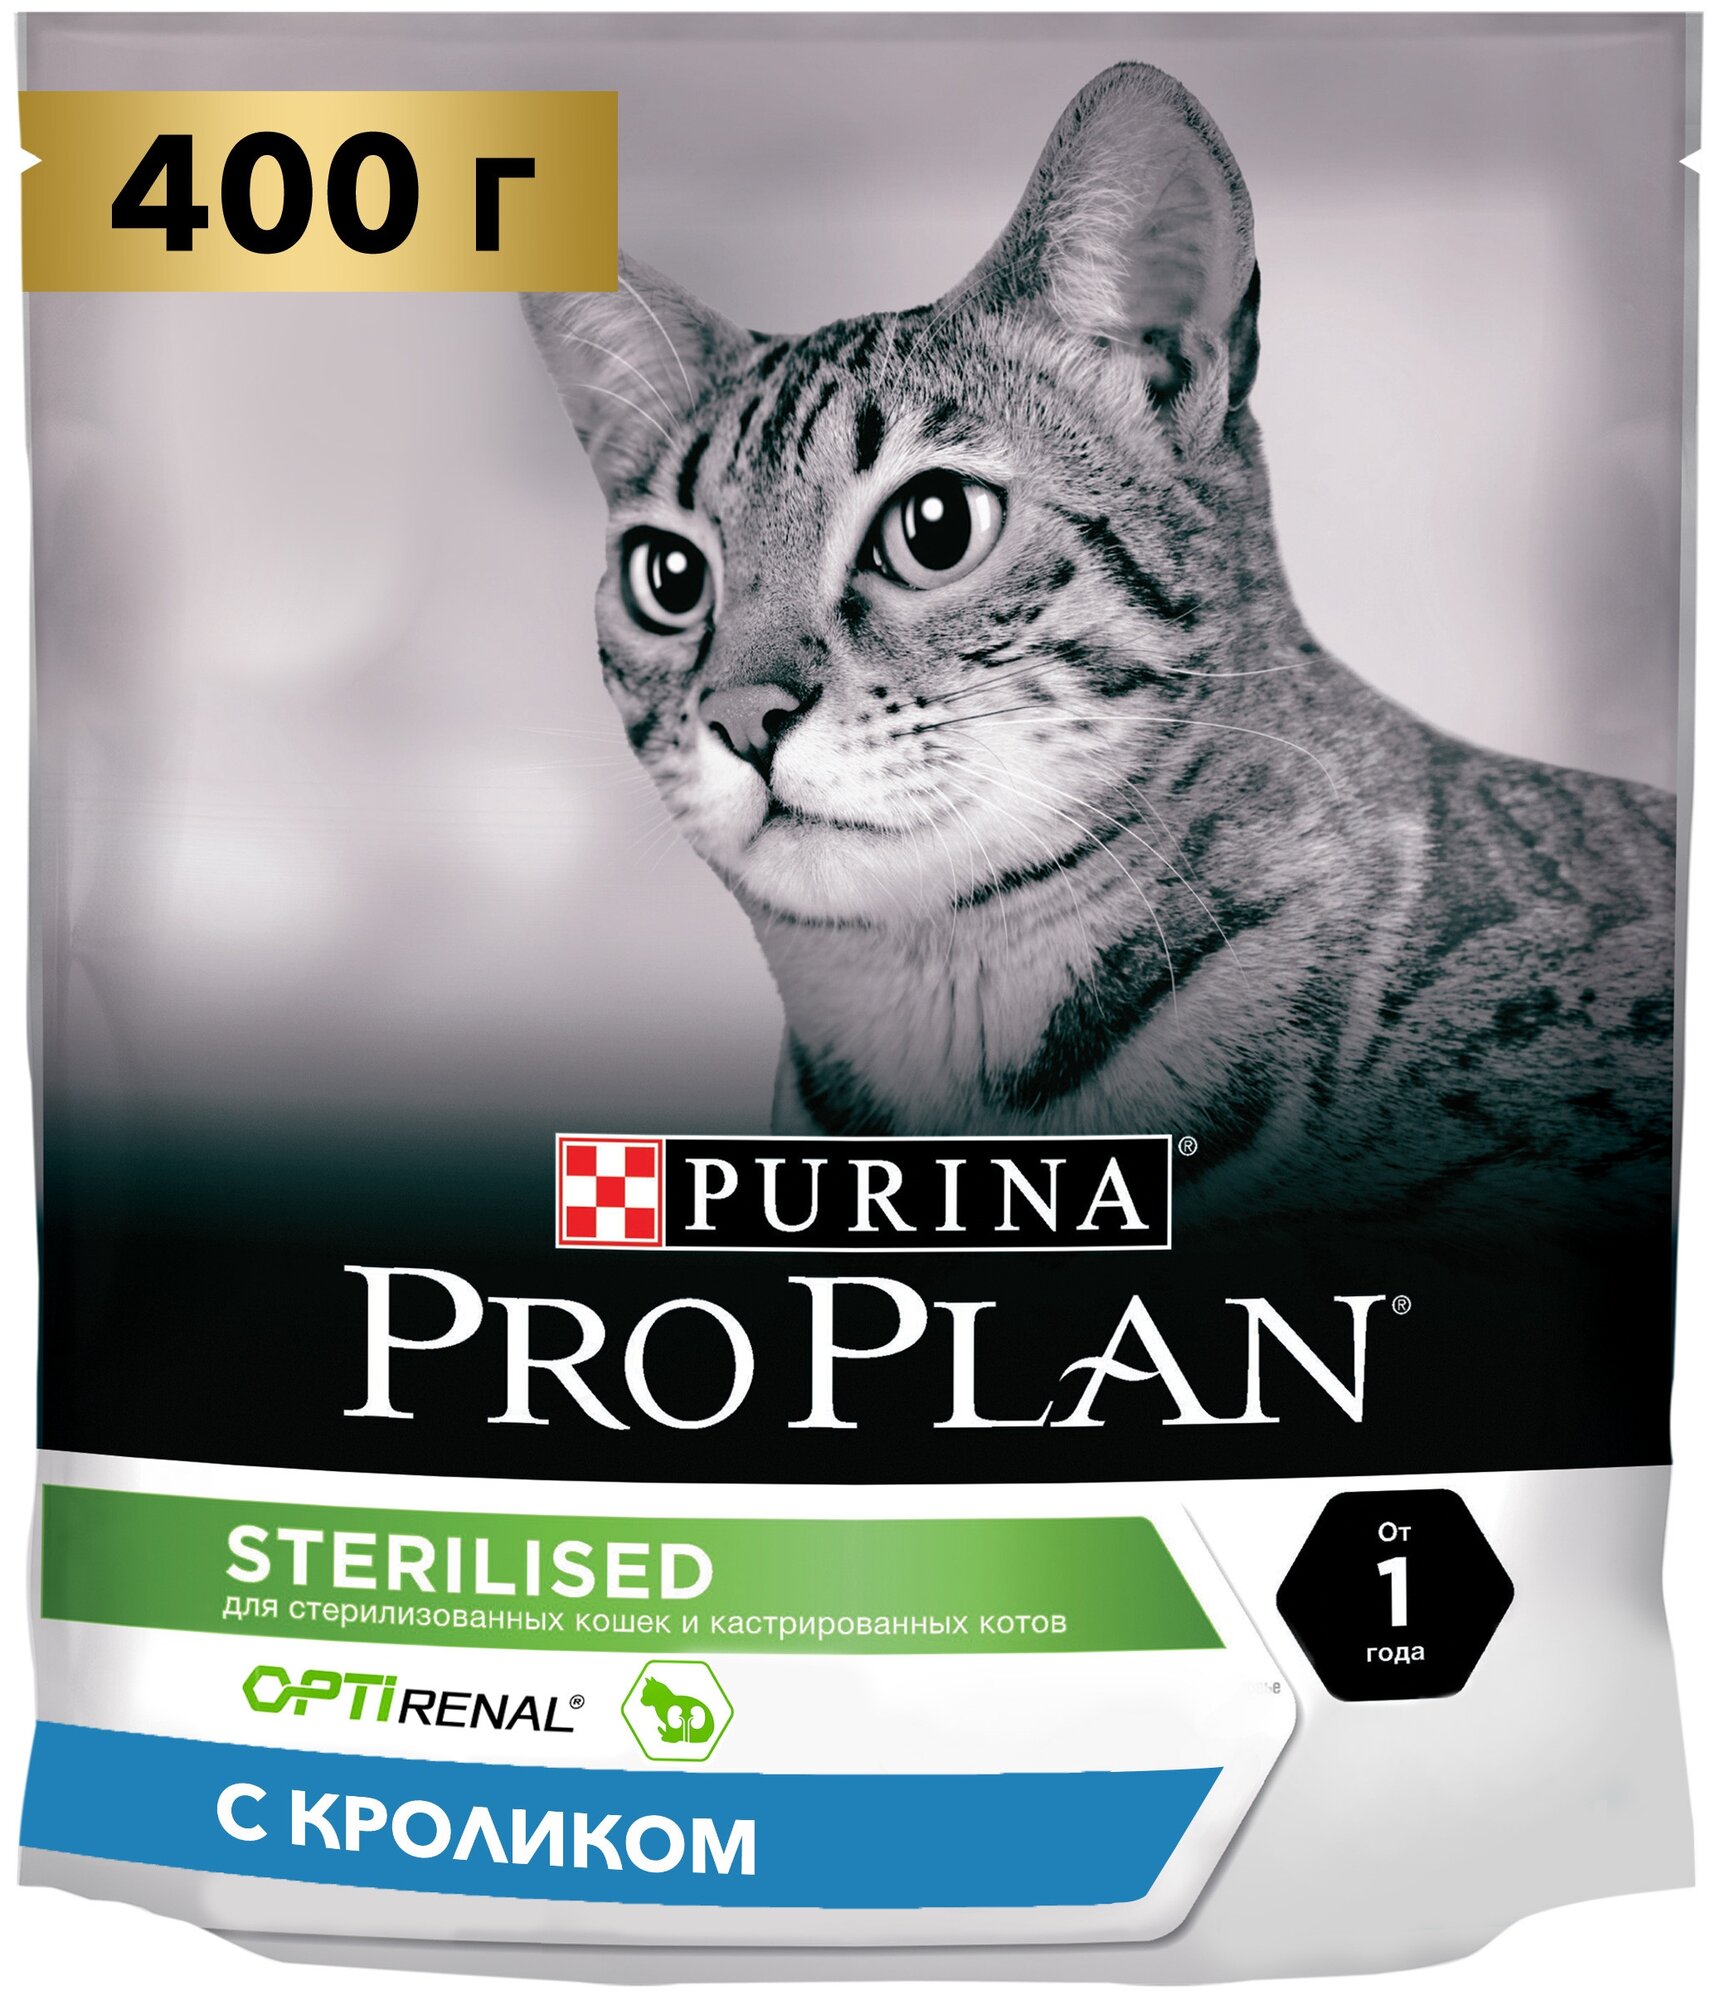 Сухой корм для кошек Pro Plan Sterilised для стерилизованных кошек с кроликом 400 г — купить в интернет-магазине по низкой цене на Яндекс Маркете